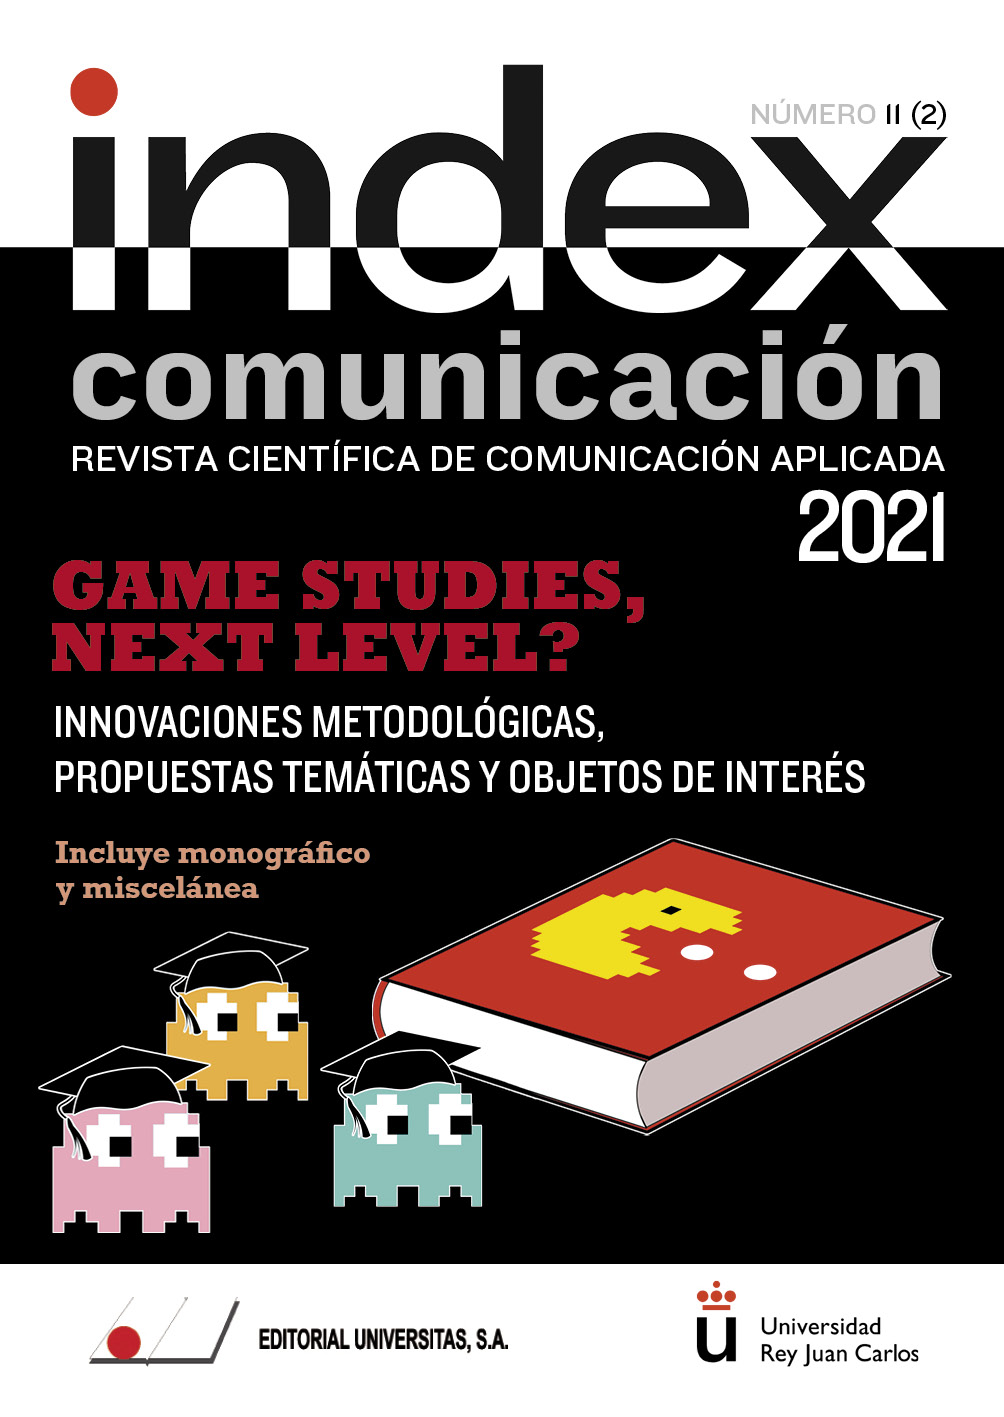 					Ver Vol. 11 Núm. 2 (2021): Game Studies, Next Level? Innovaciones metodológicas, propuestas temáticas y objetos de interés
				